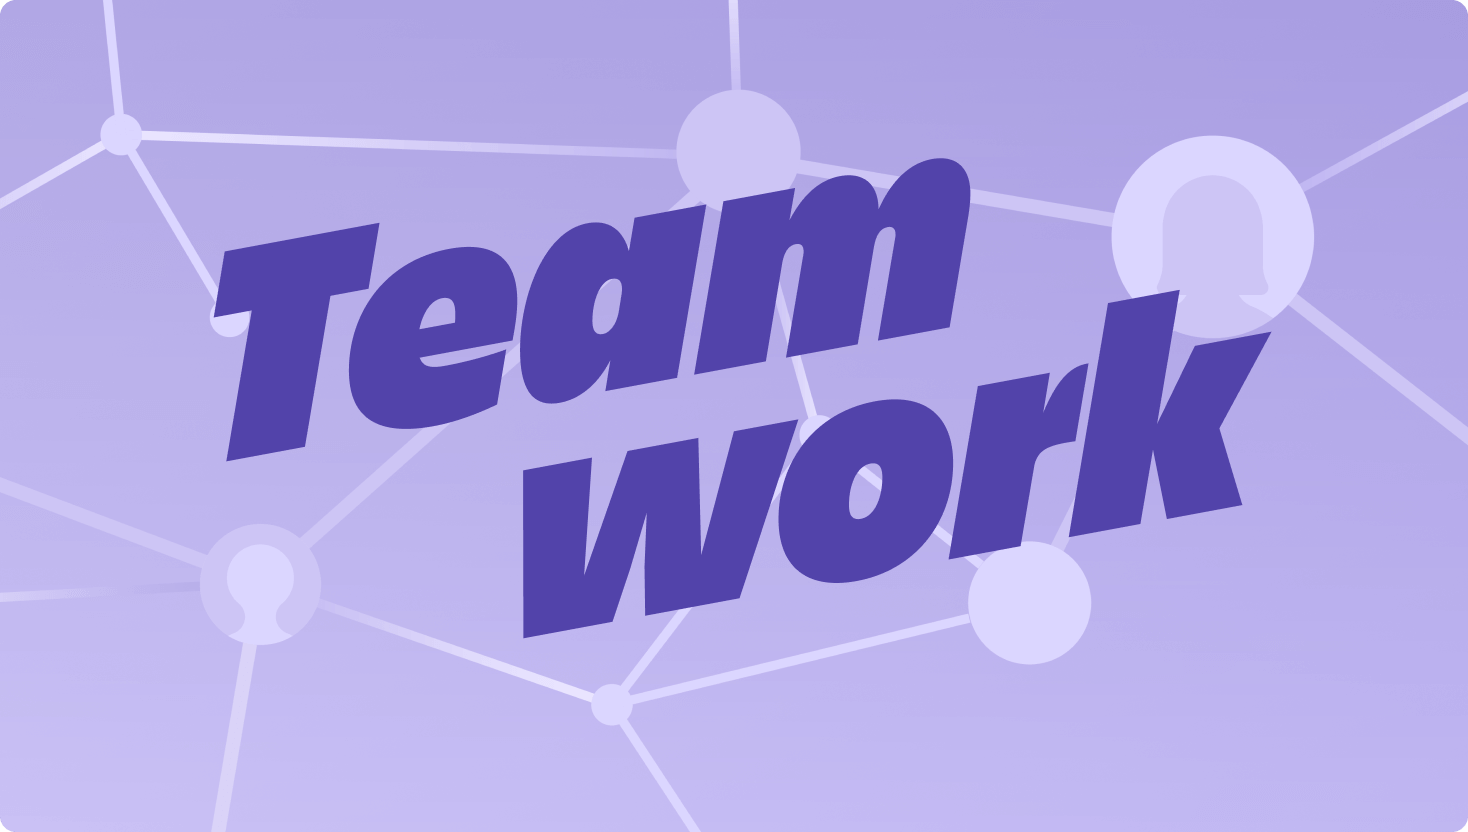 一个带有醒目 Teamwork 字样的网络中连接节点的紫色图像